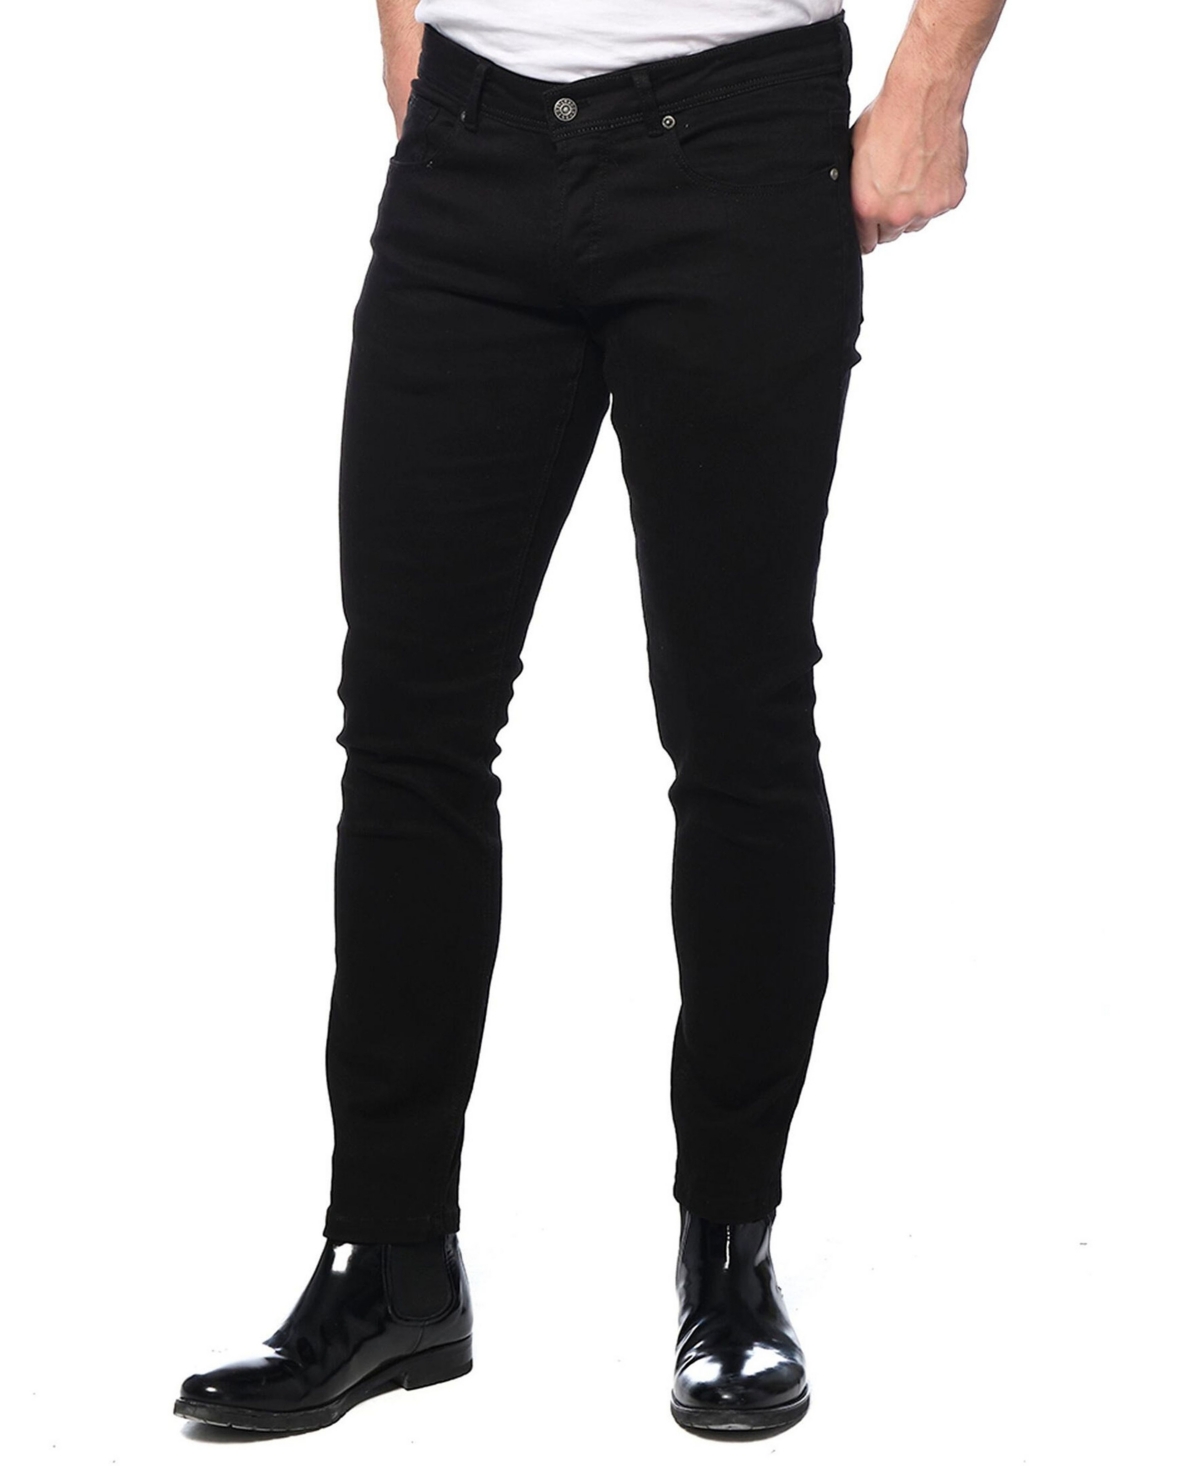 Men's Modern Slim-Fit Stretchy Jeans - Black